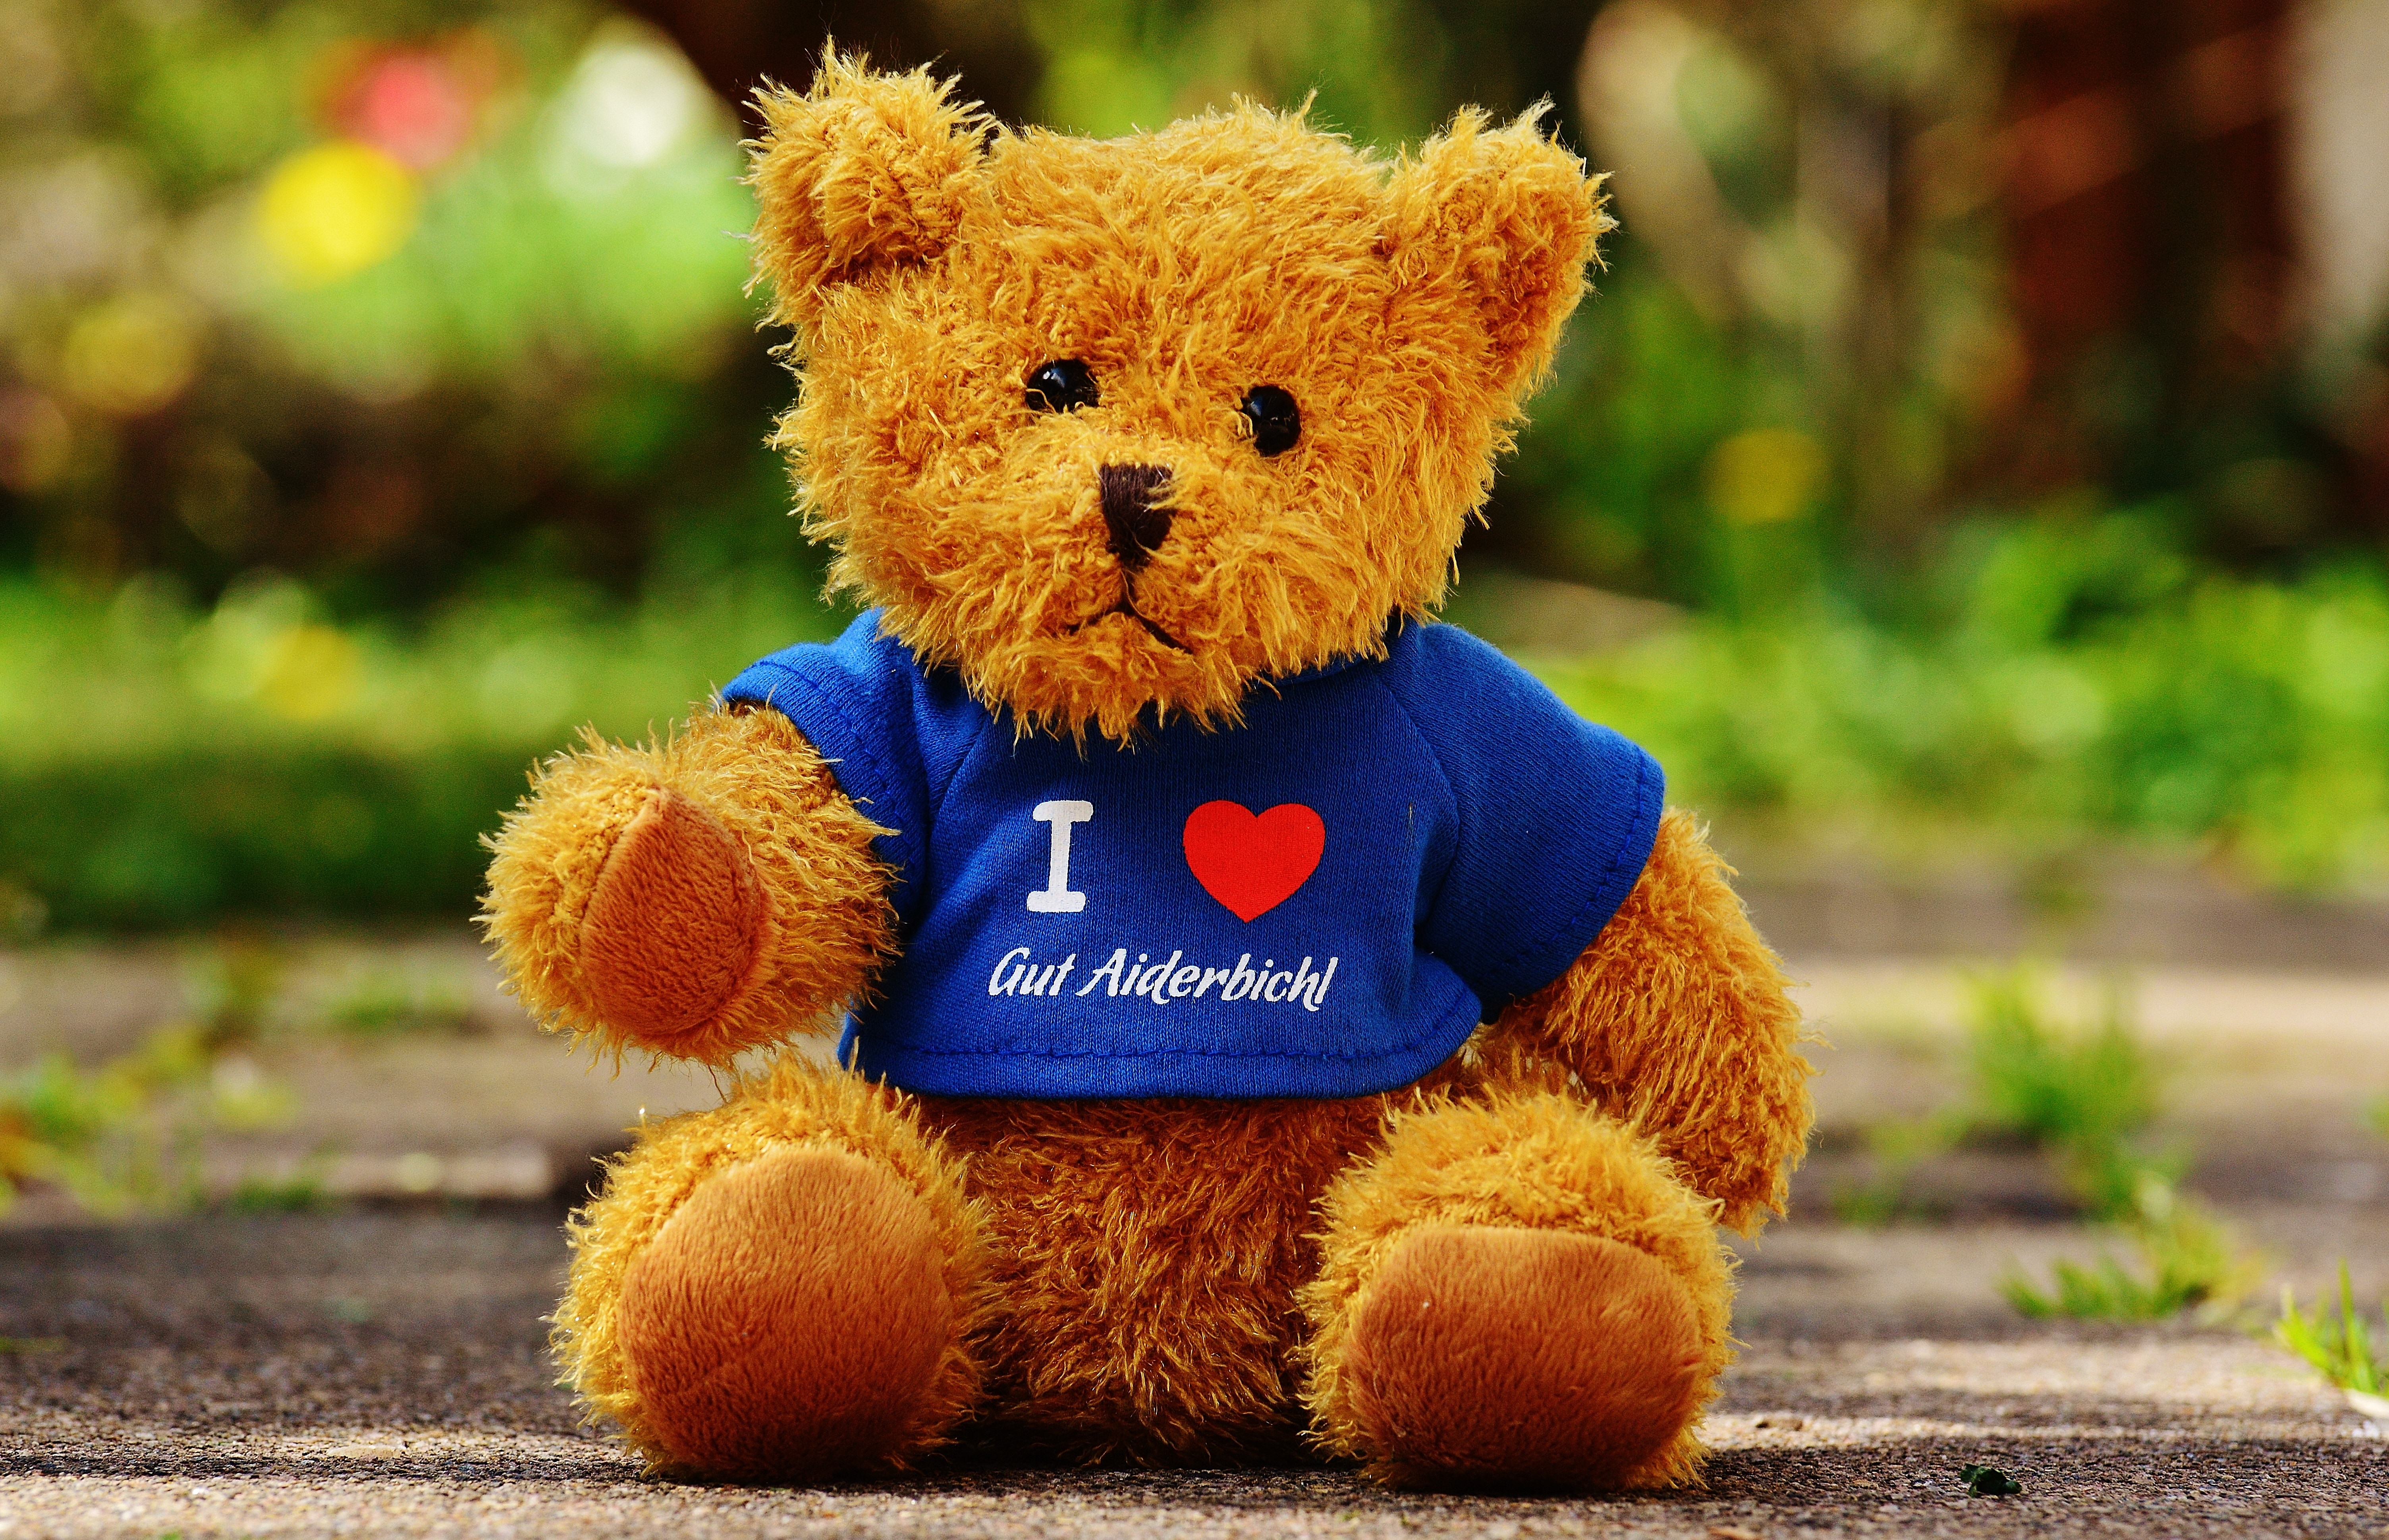 Teddy, Sanctuary, Good Aiderbichl, toy, teddy bear